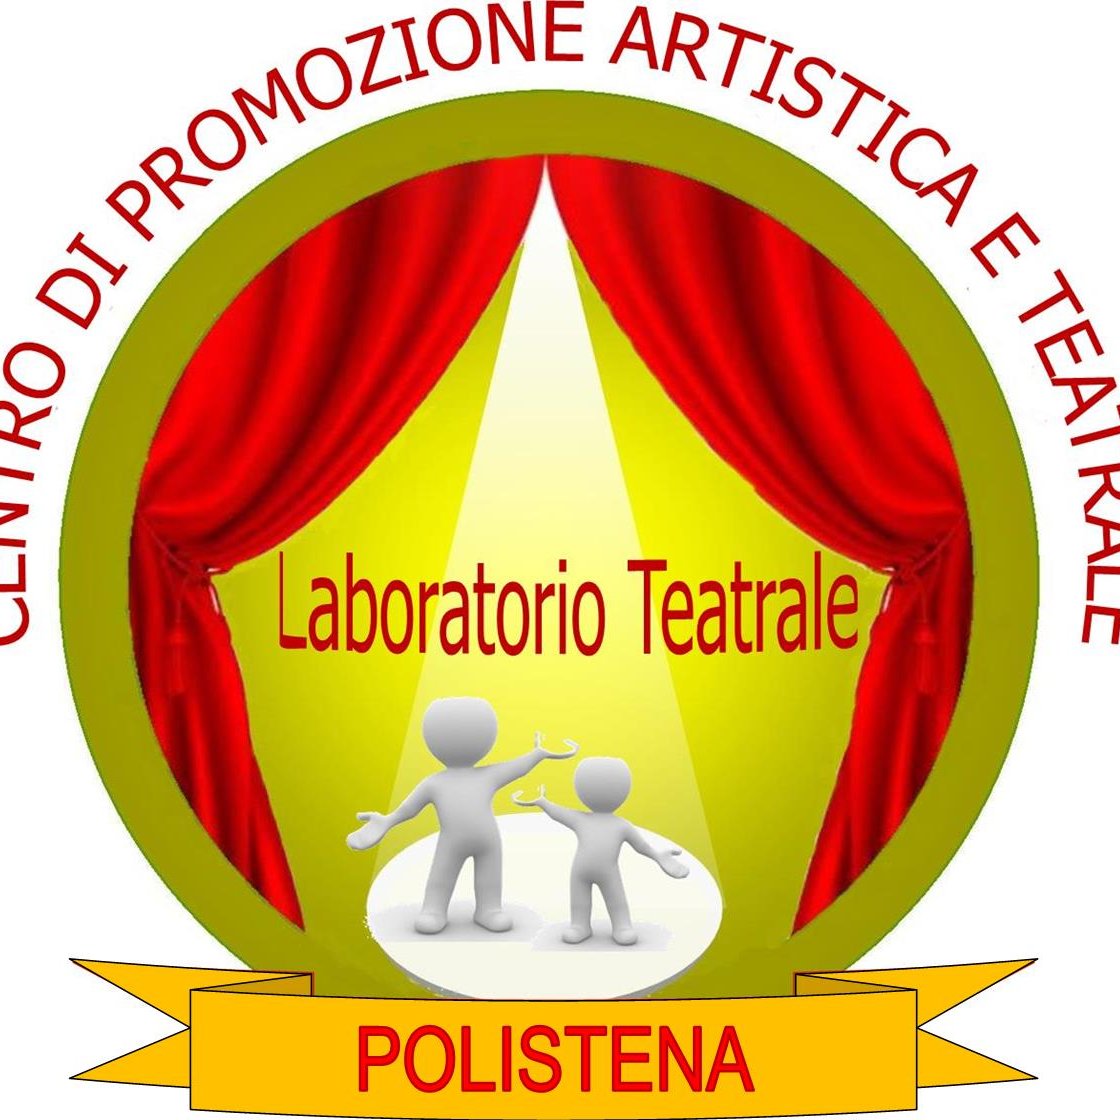 Centro di Promozione Artistica e Teatrale Città di Polistena (RC) -Italy